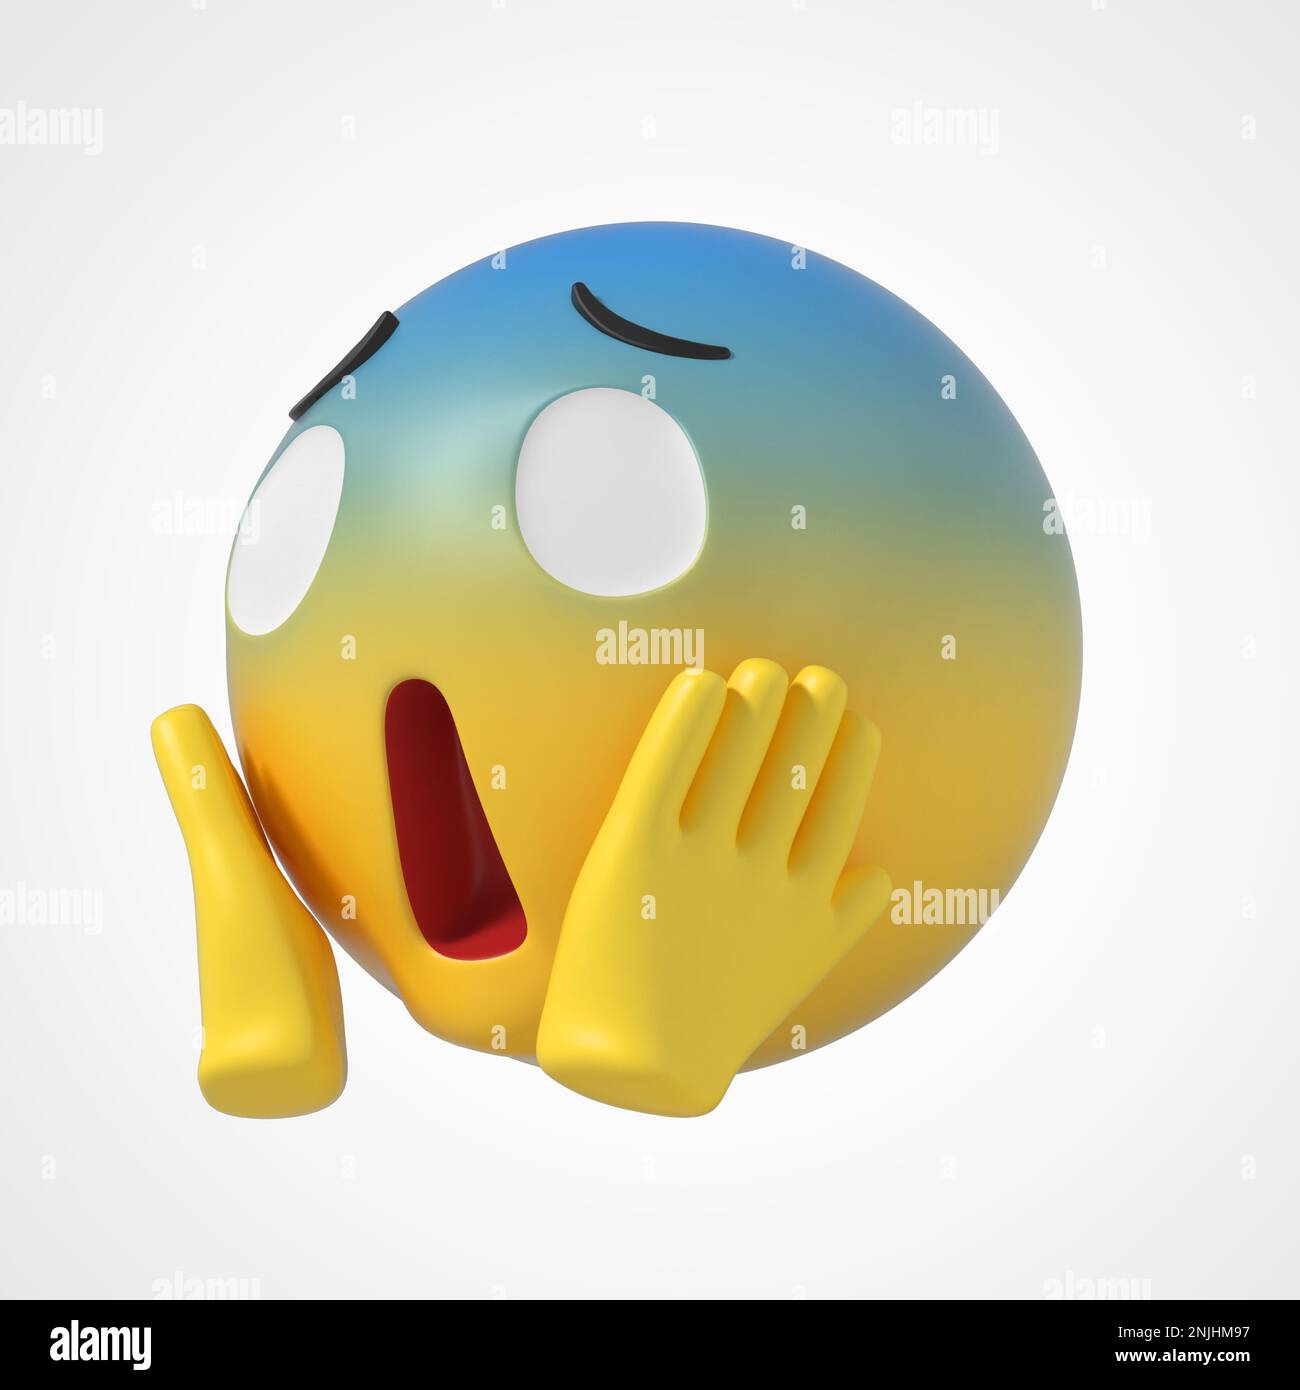 Frightened Emoji Stock Photos - 1,968 Images